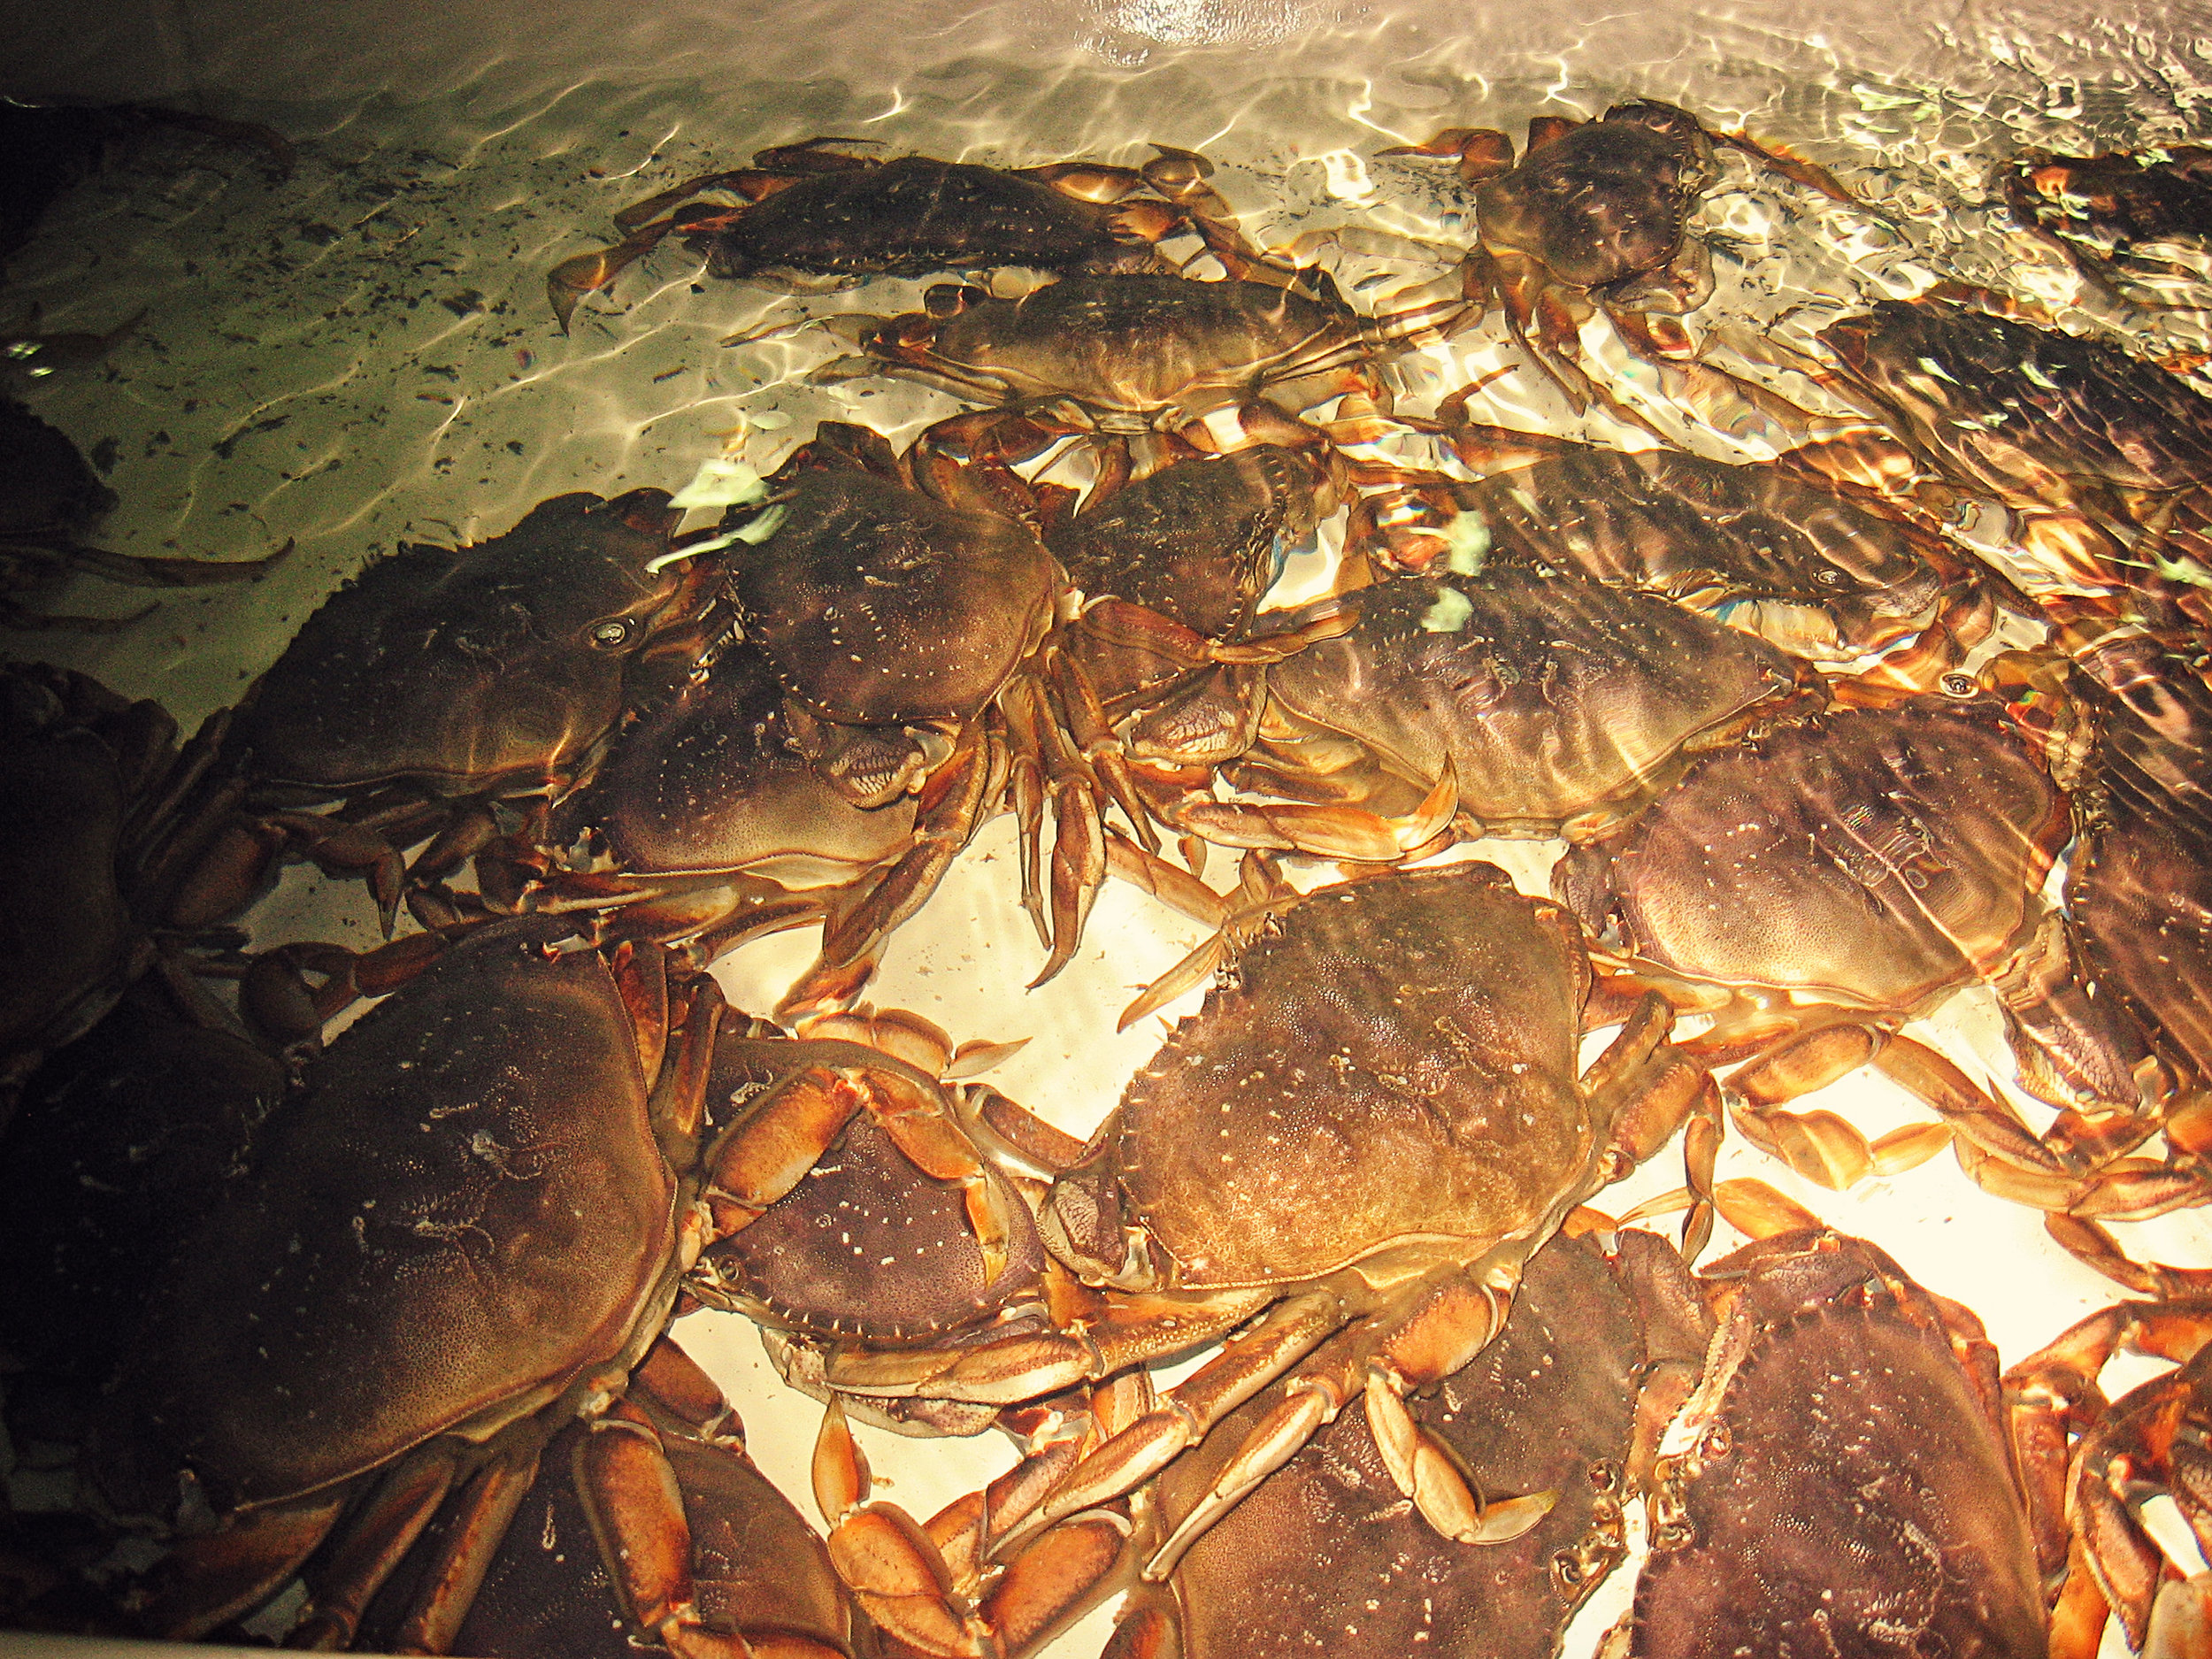 Dungeness Crab (Metacarcinus magister)